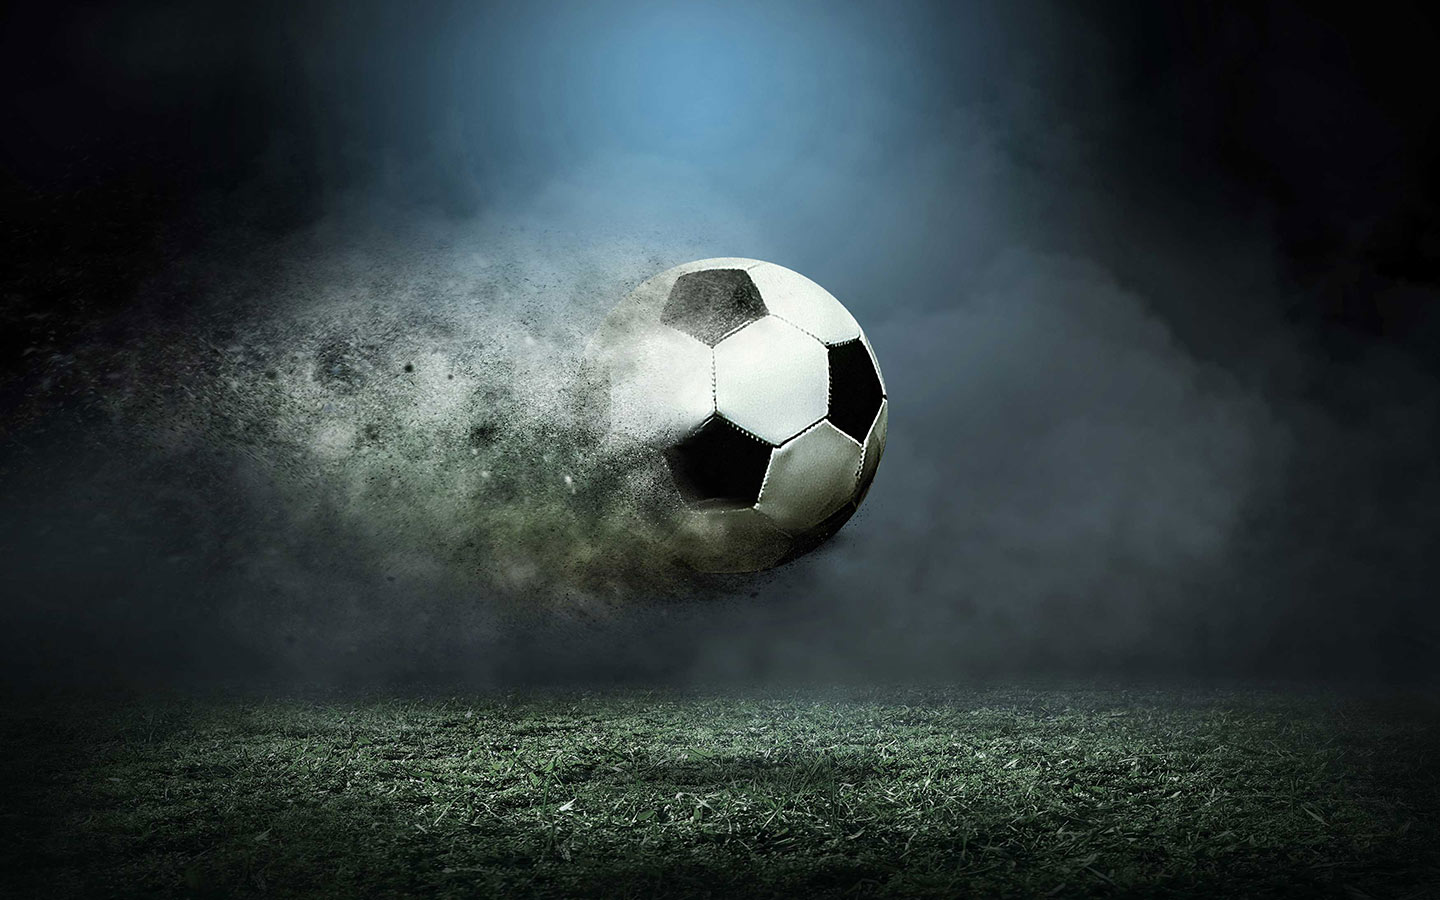 Soccer ball flying across the field